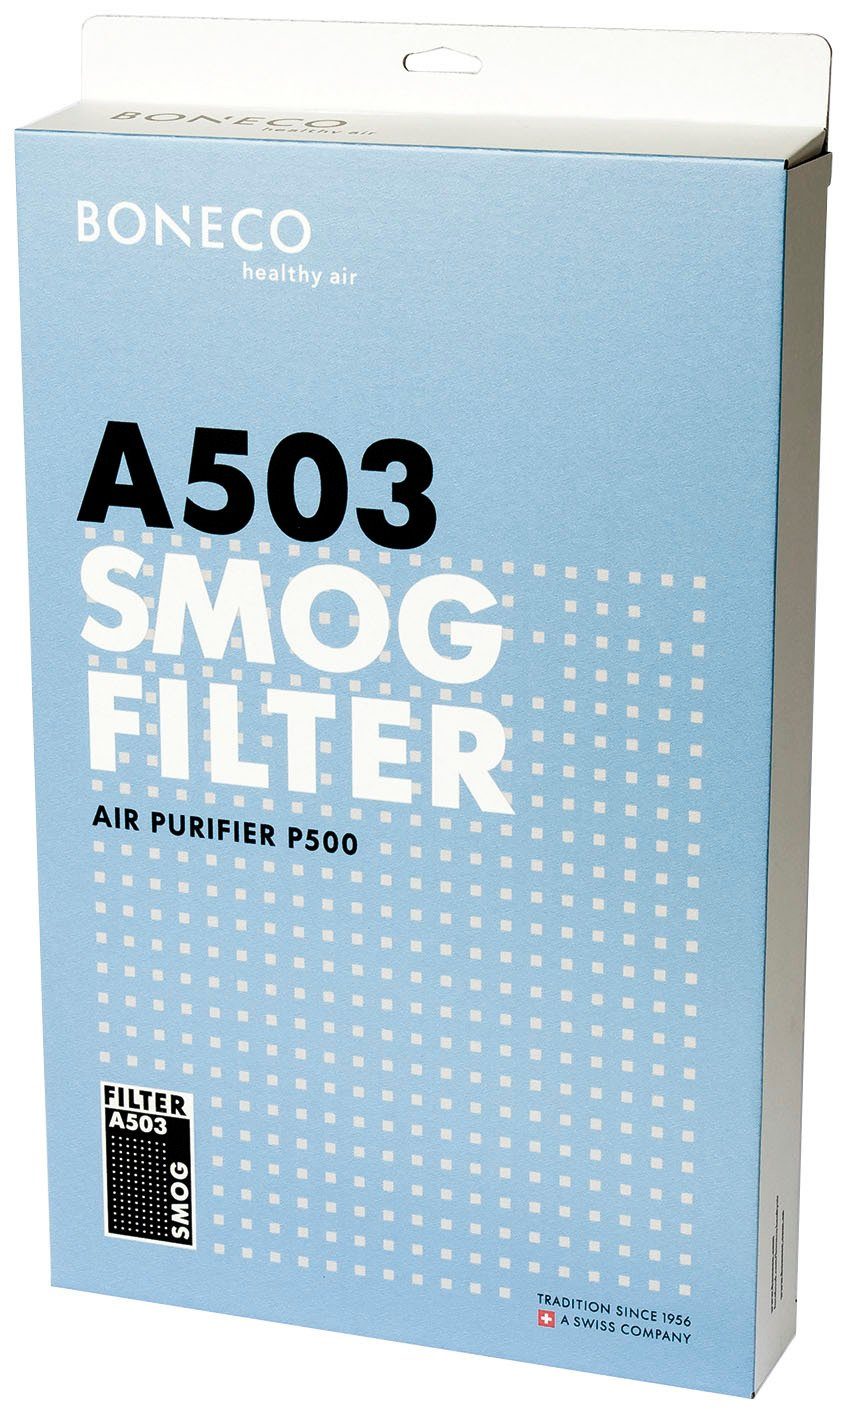 Boneco Kombifilter Smog Filter Luftreiniger P500 Zubehör für A503